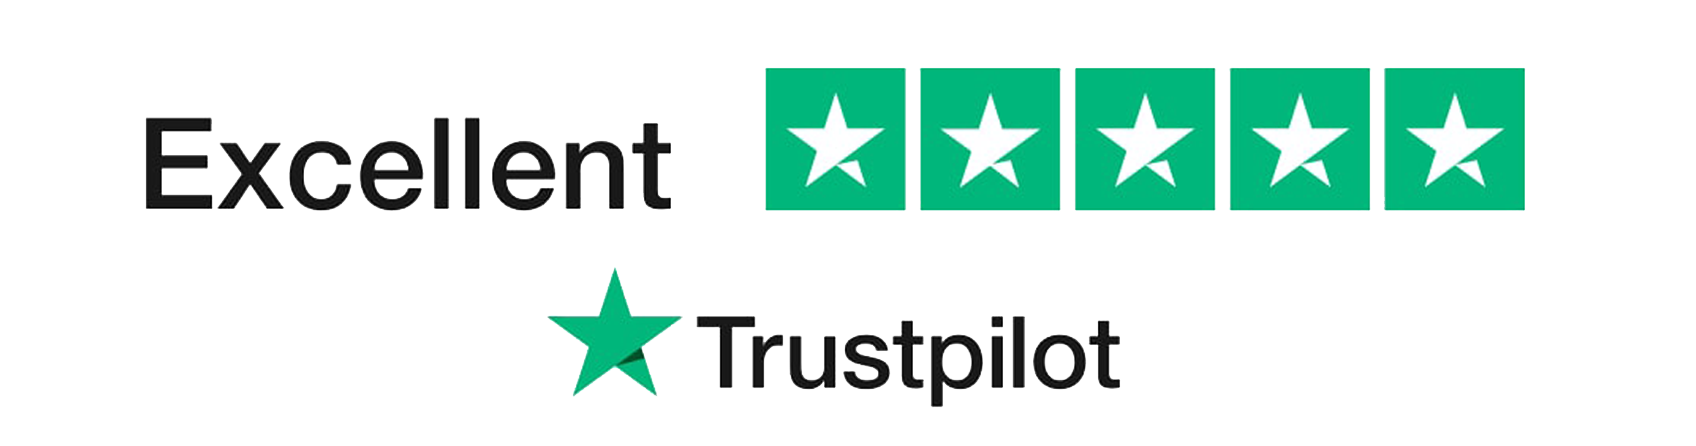 Trustpilot review widget